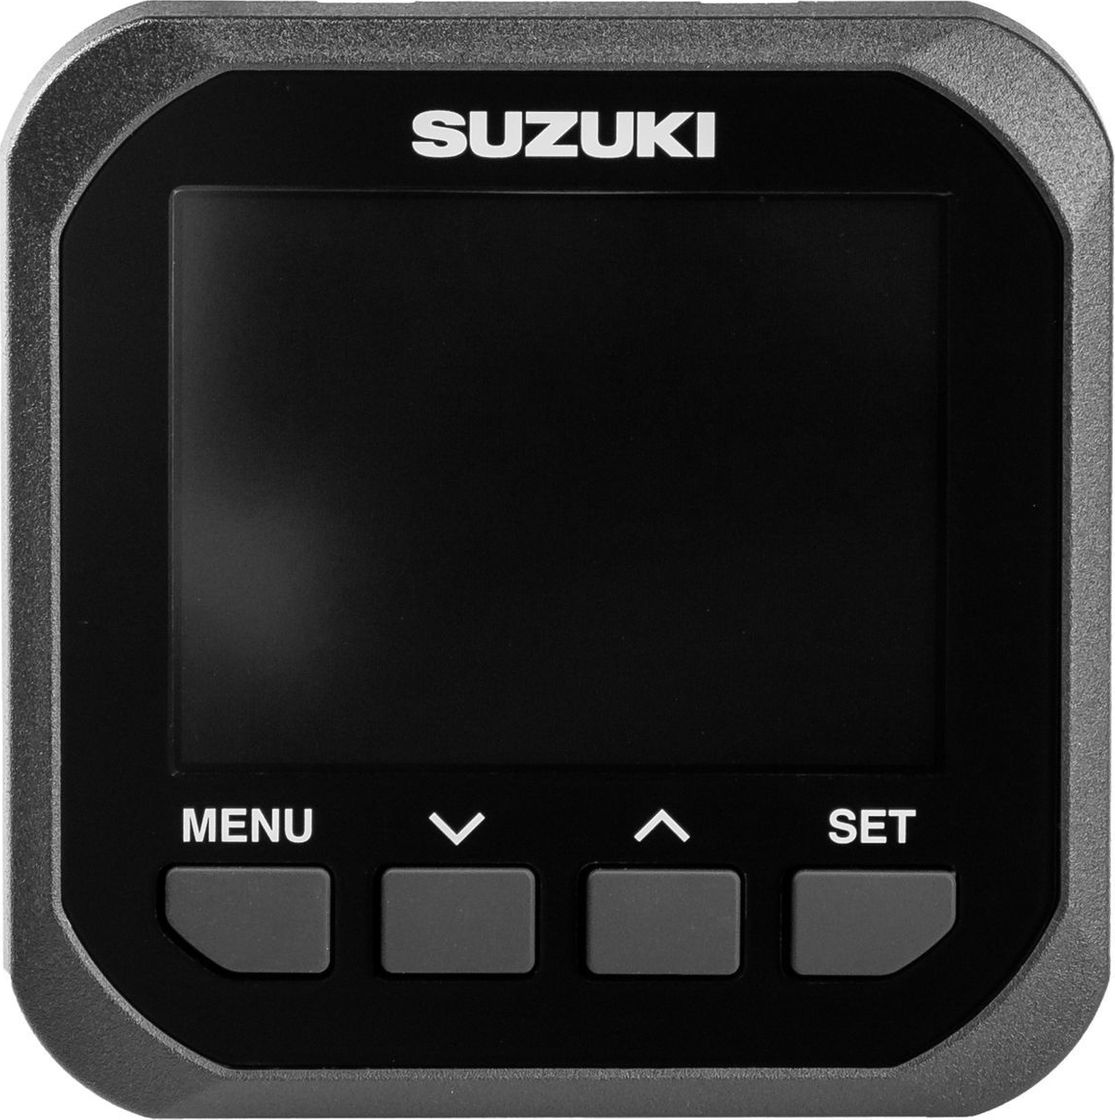 Прибор многофункциональный SMG4, Suzuki 3401196L42000